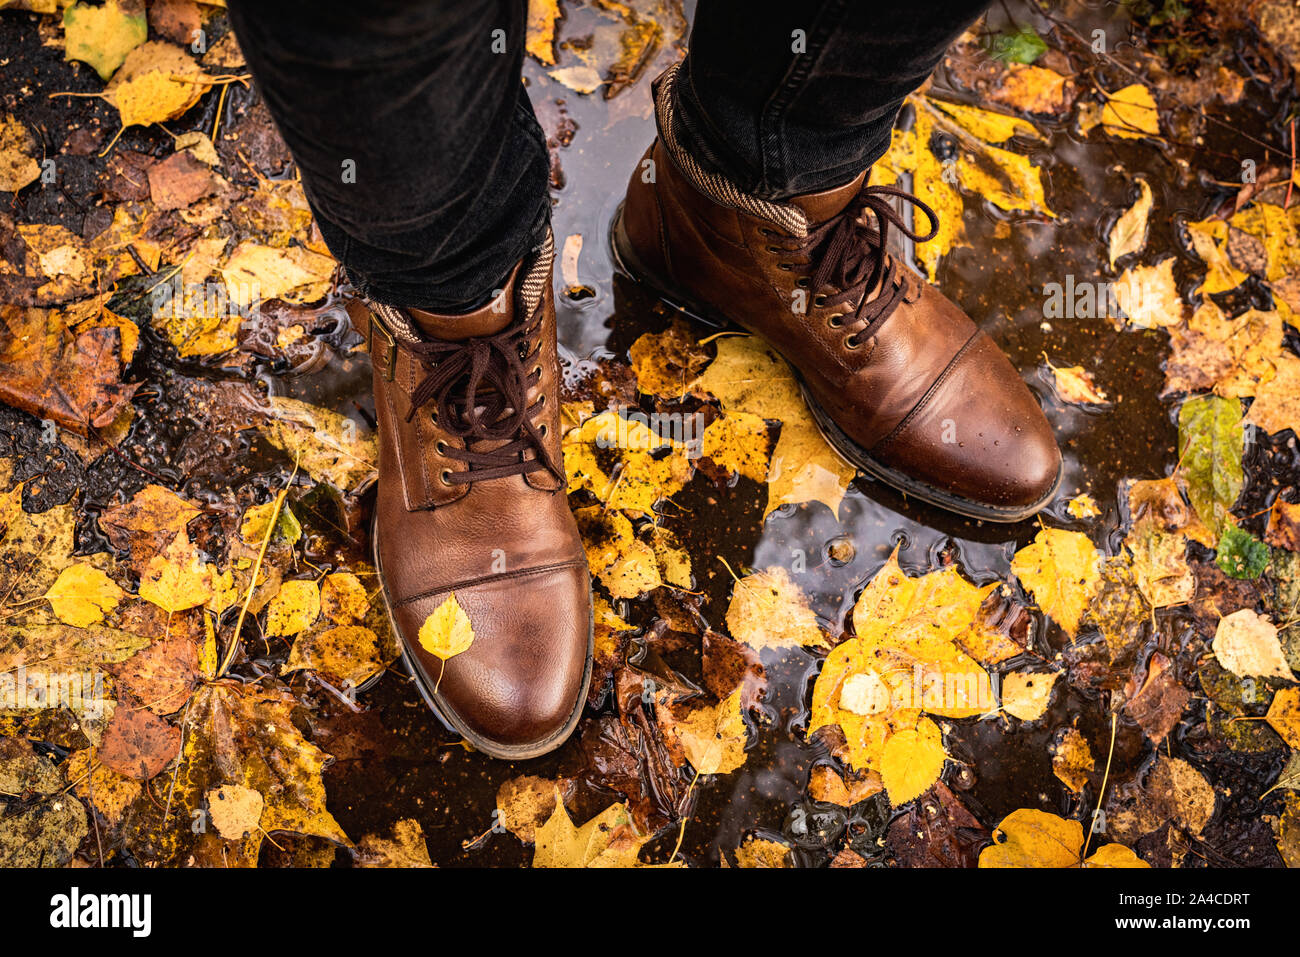 Beine aus braunem Leder Stiefel auf nassen Asfalt mit bunten gefallen Ahorn Blätter um. Konzept der Herbst Herbst Jahreszeit, Herbst Mode, trendy hipster Leben Stockfoto